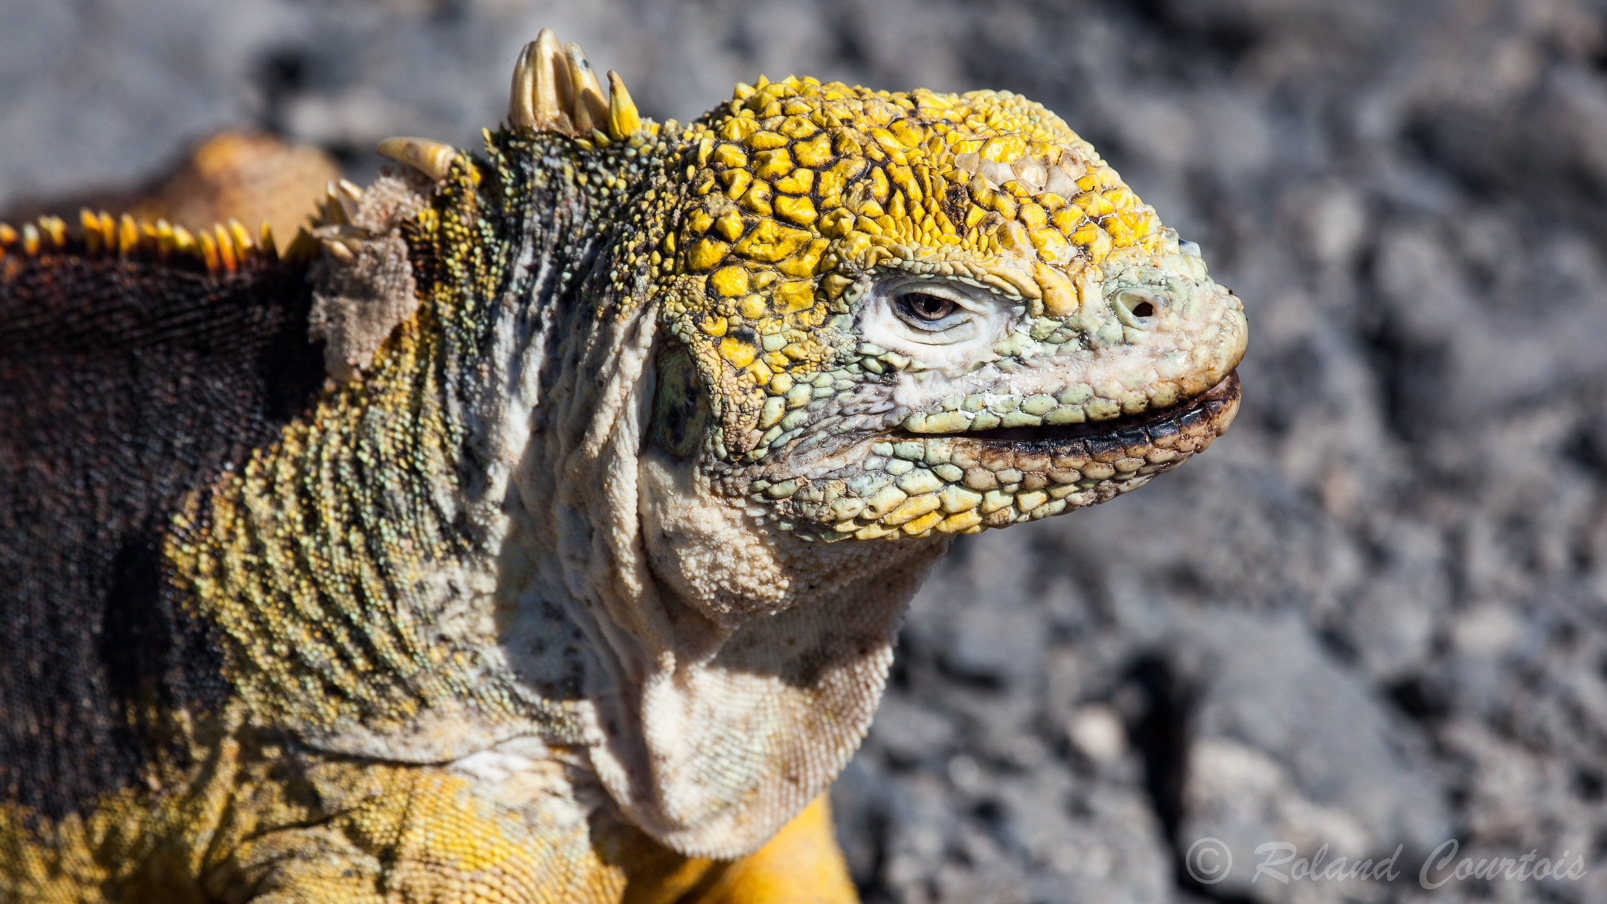 Iguane terrestre des Galapagos. Conolophus subcristatus, l'Iguane terrestre des Galapagos, est une espèce de sauriens de la famille des Iguanidae (WIKI)